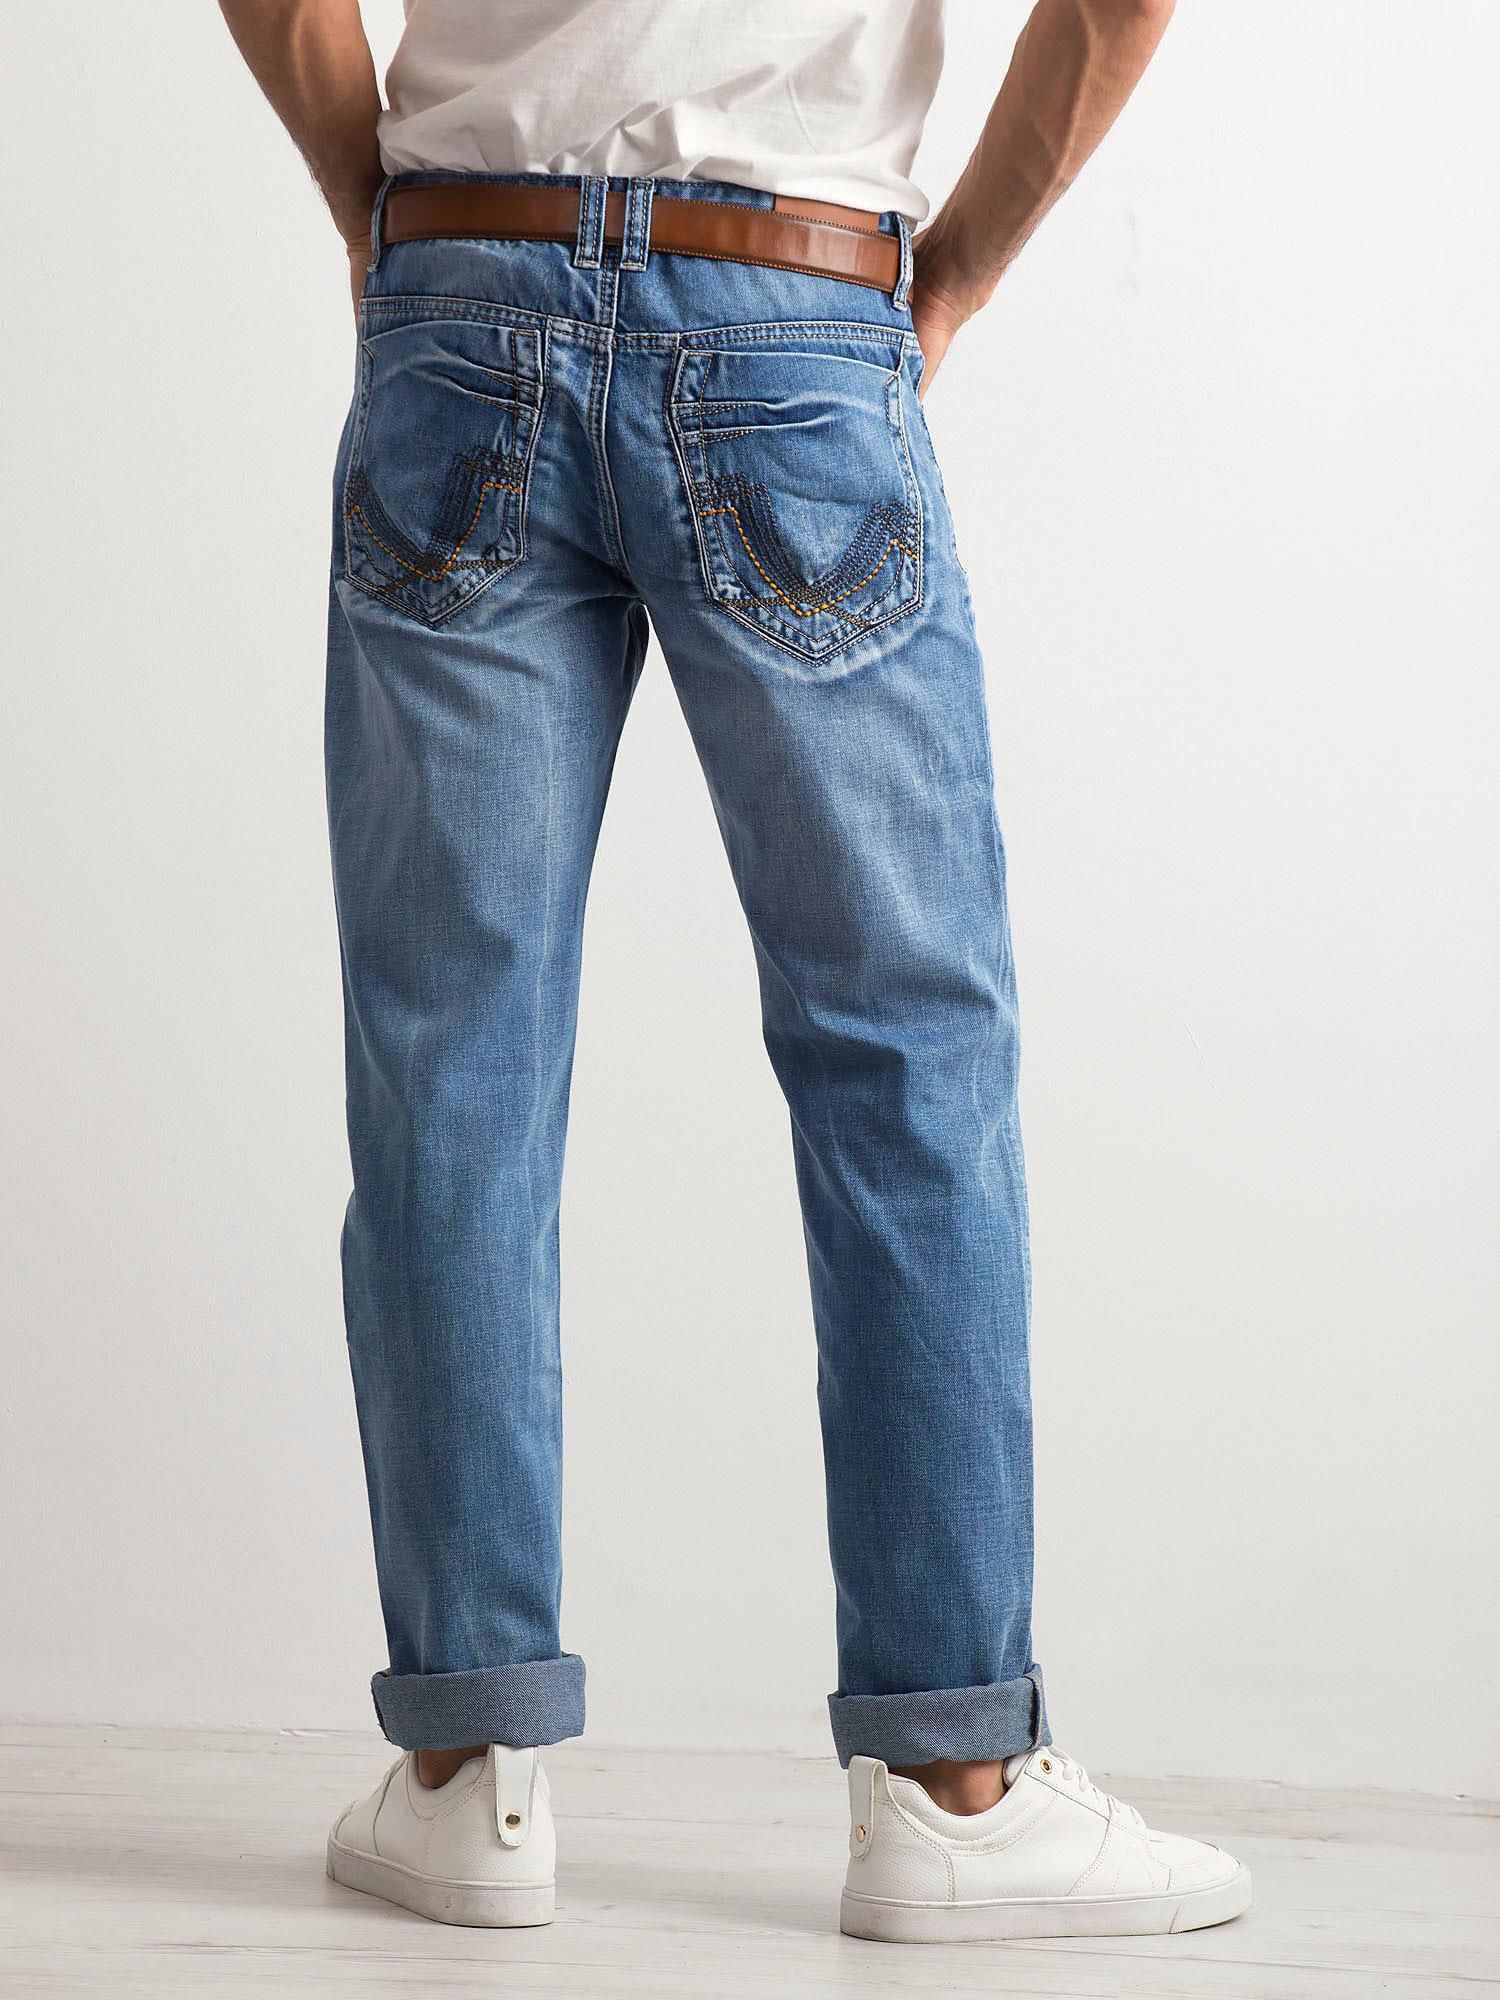 Джинсы мужские больших размеров купить в москве. Регуляр фит джинсы мужчины. Regular Fit джинсы мужские. Рь джинсы мужские Regular Fit. Мужские джинсы вид сбоку.